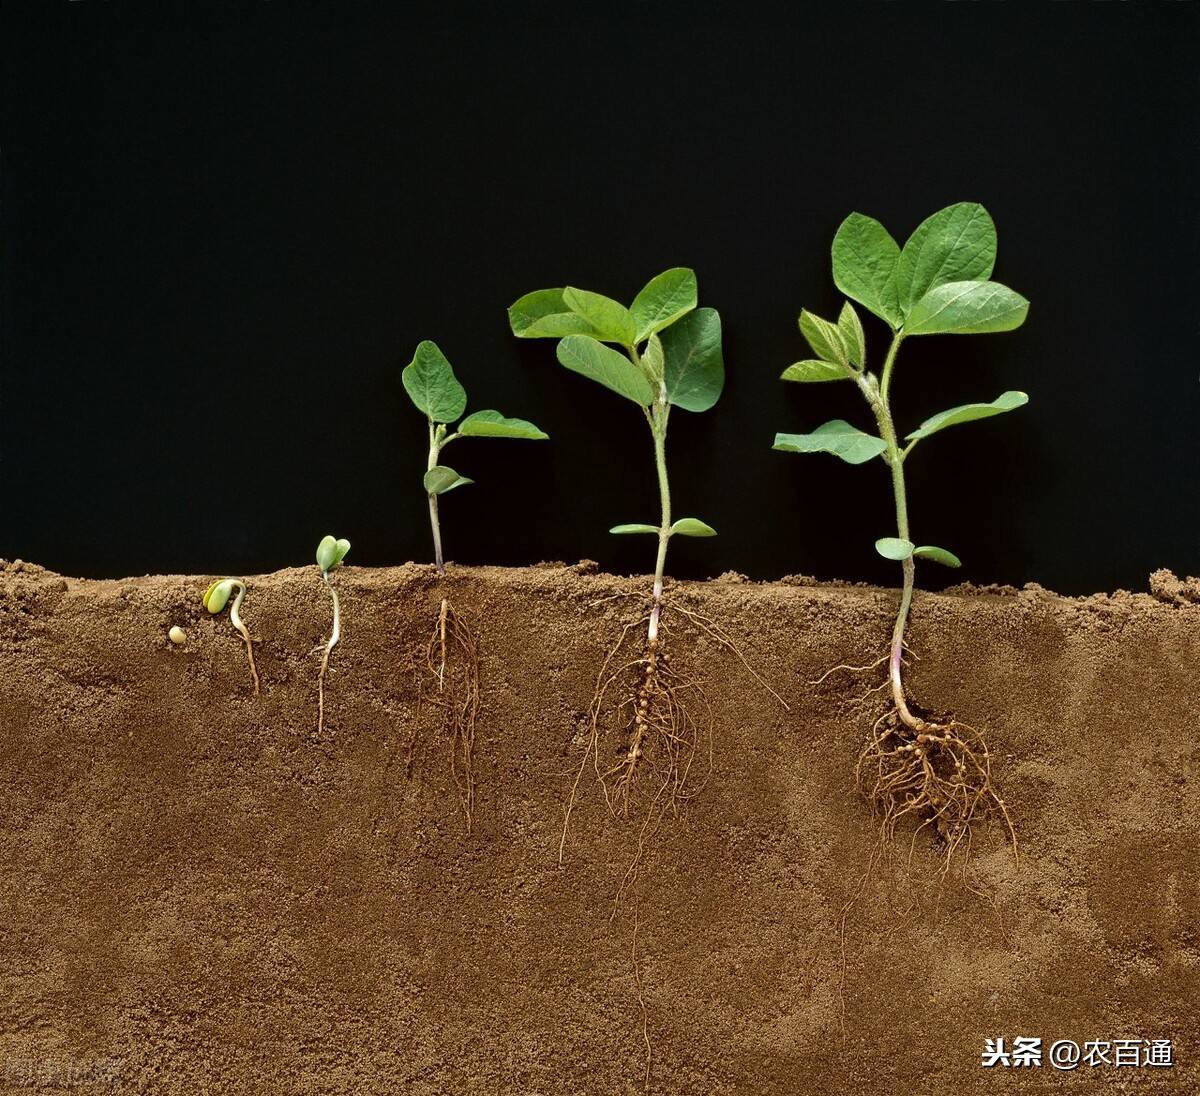 根系好才能有产量，如何养根护根，这几个小技巧一定要记住 - 肥料应用 - 191农资人 - 农技社区服务平台 - 触屏版